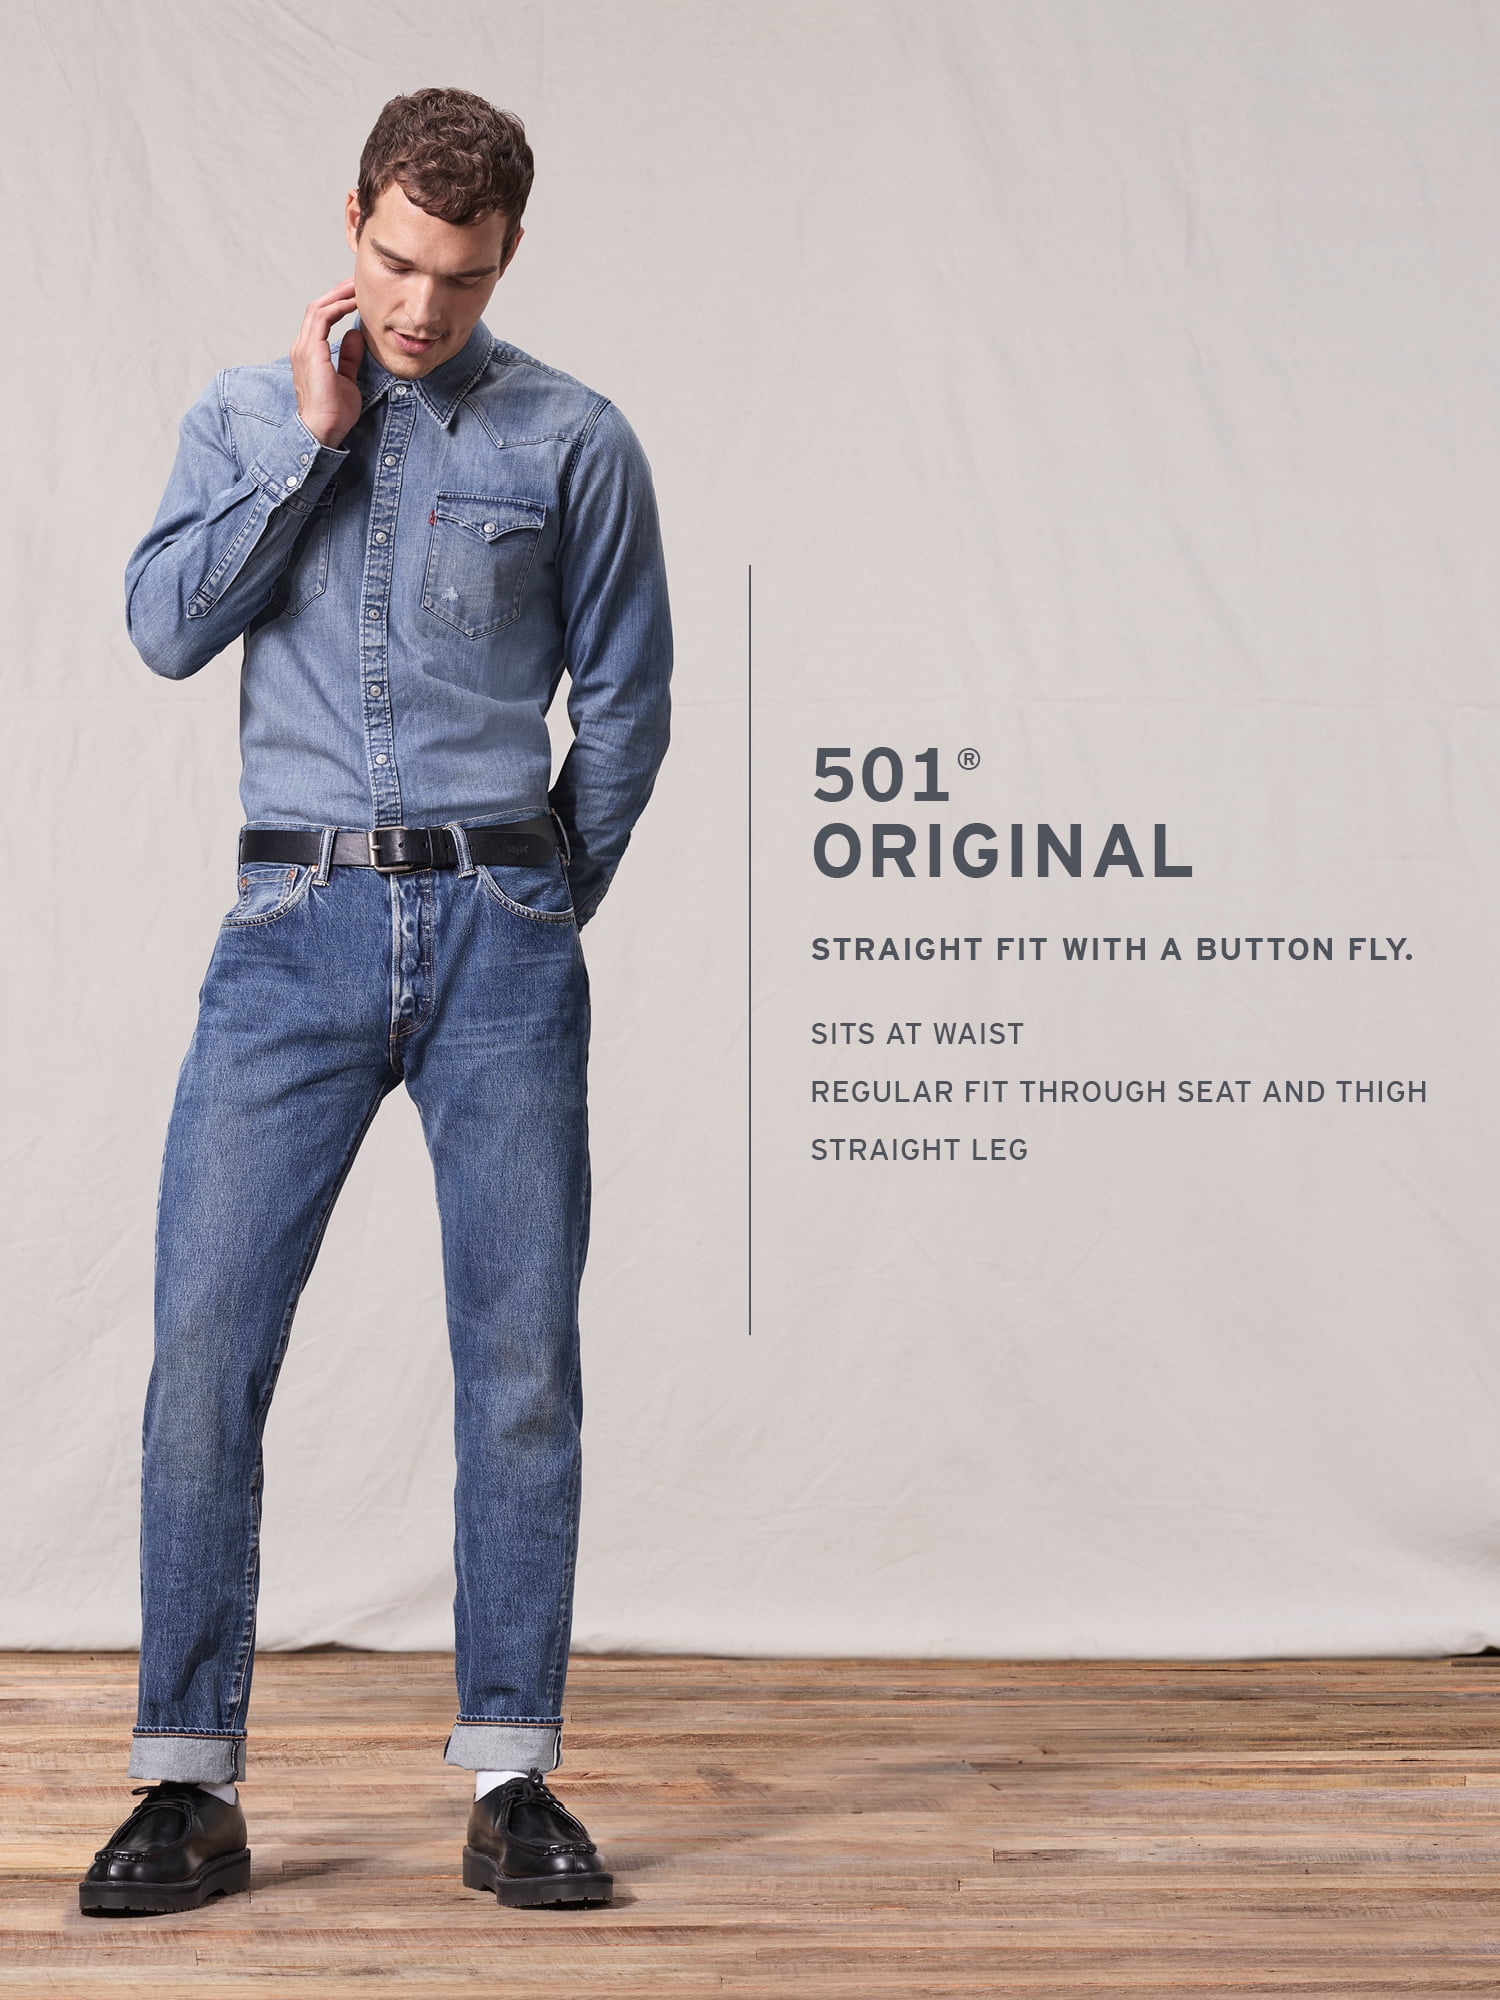 Gelukkig Schuldenaar chrysant Levi's Men's 501 Original Fit Jeans - Walmart.com